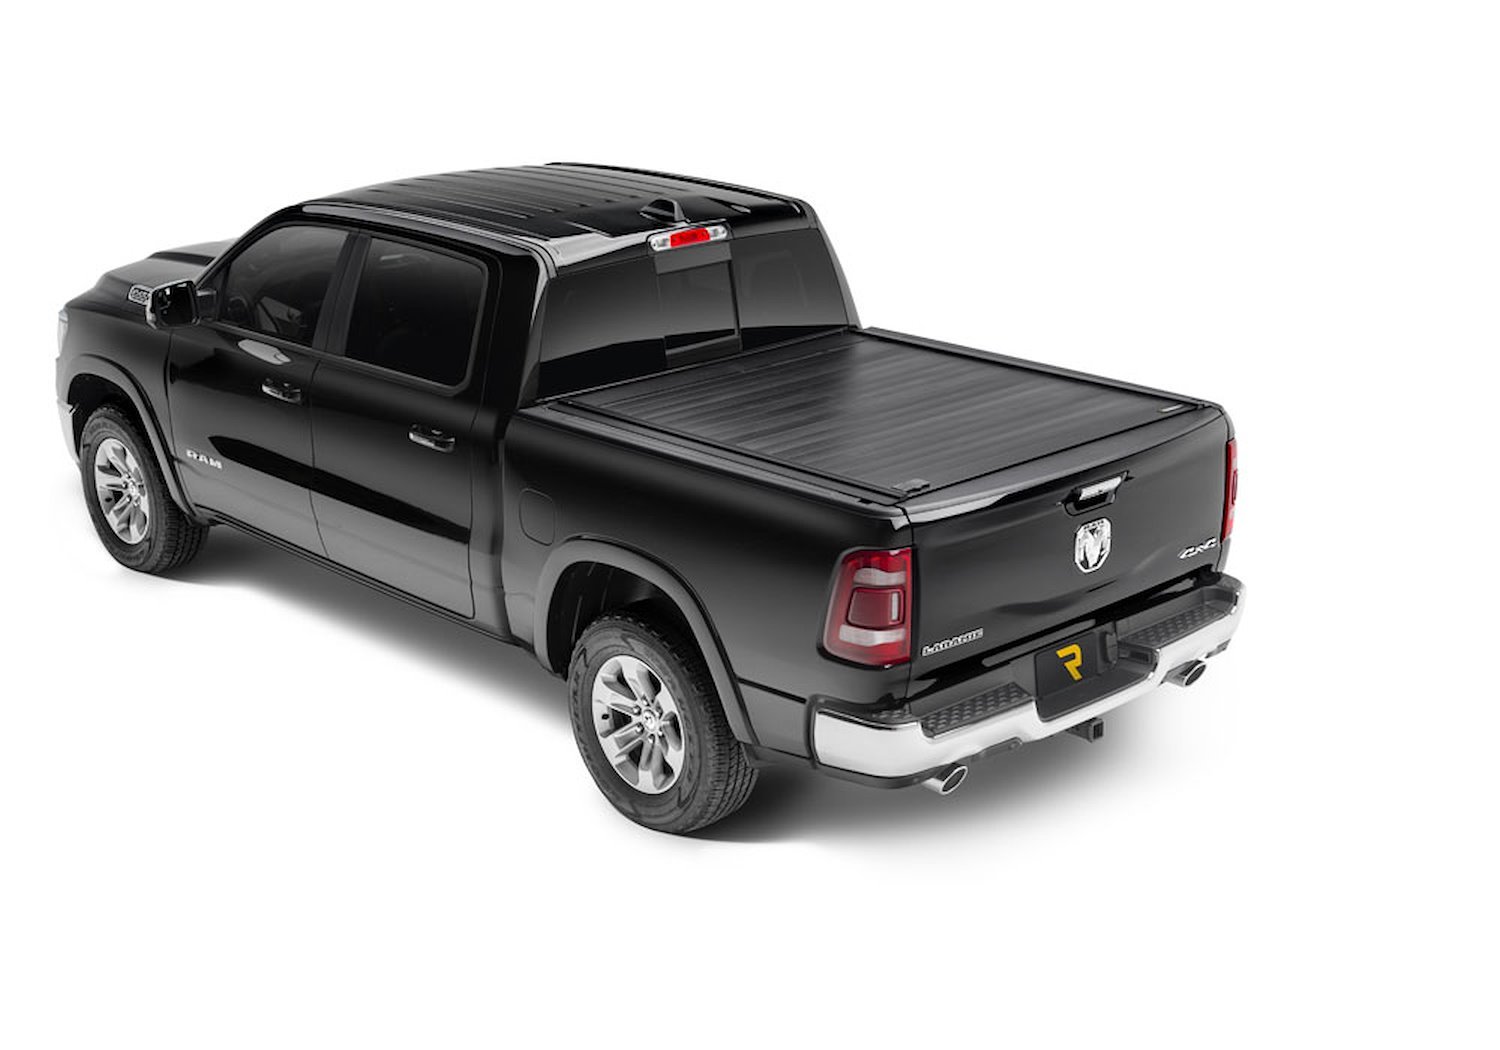 80232 RetraxPRO MX Retractable Tonneau Cover Fits Select Dodge/Ram 1500/2500/3500 6' 4" Bed